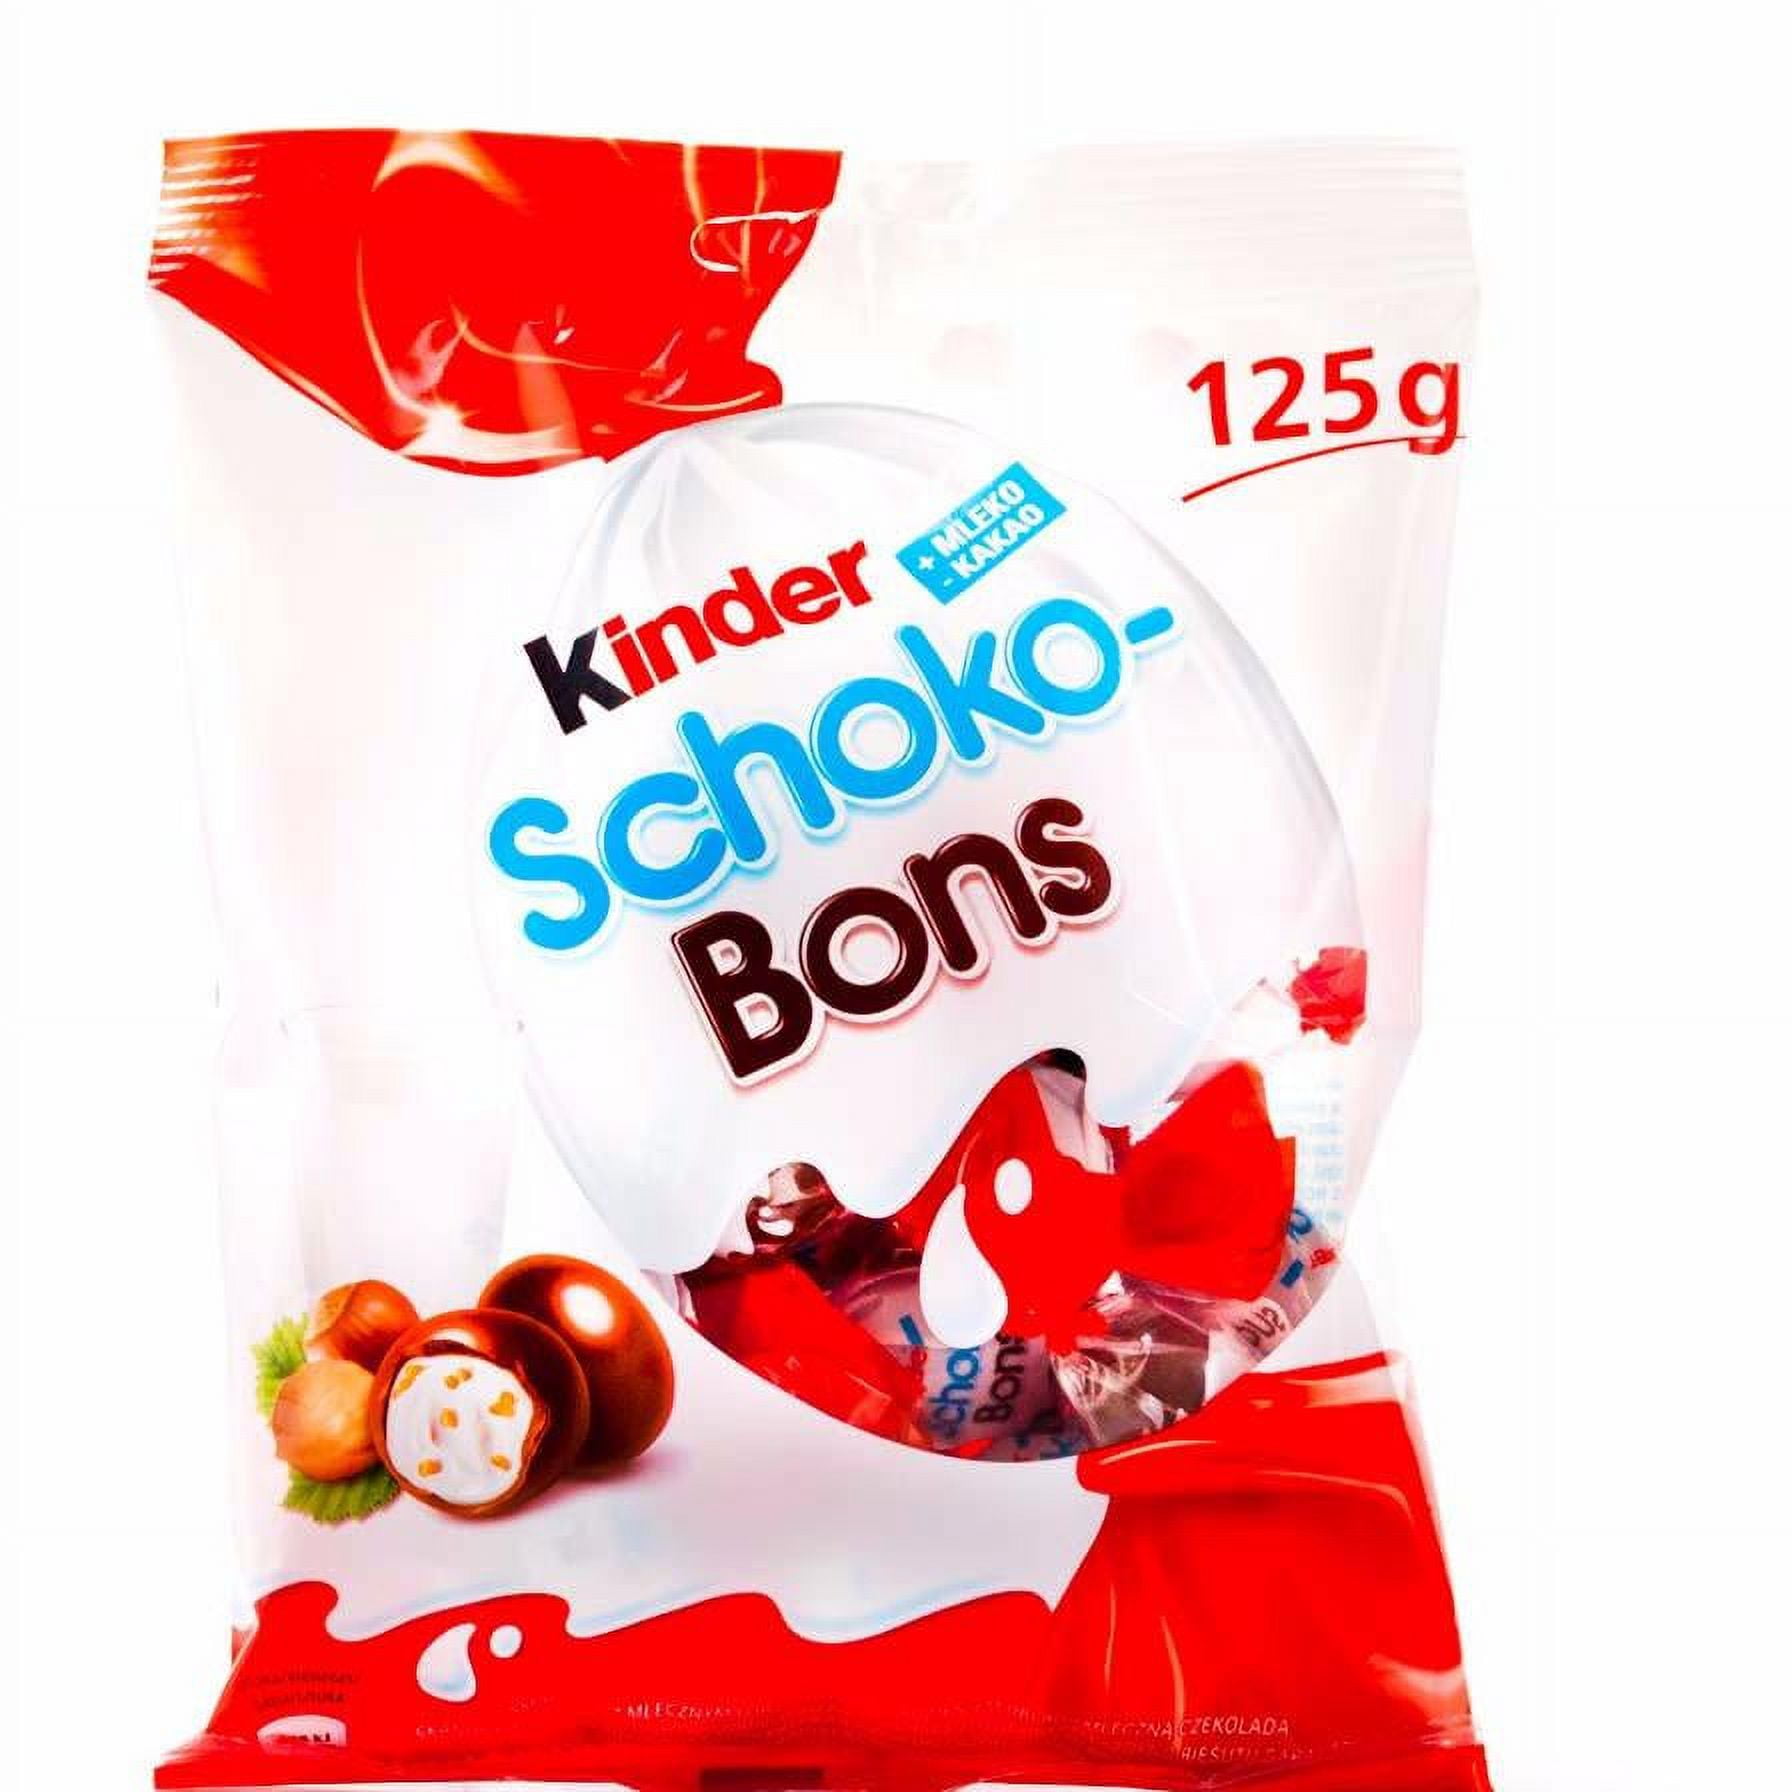 Ferrero Kinder Schoko-Bons 7.05 oz